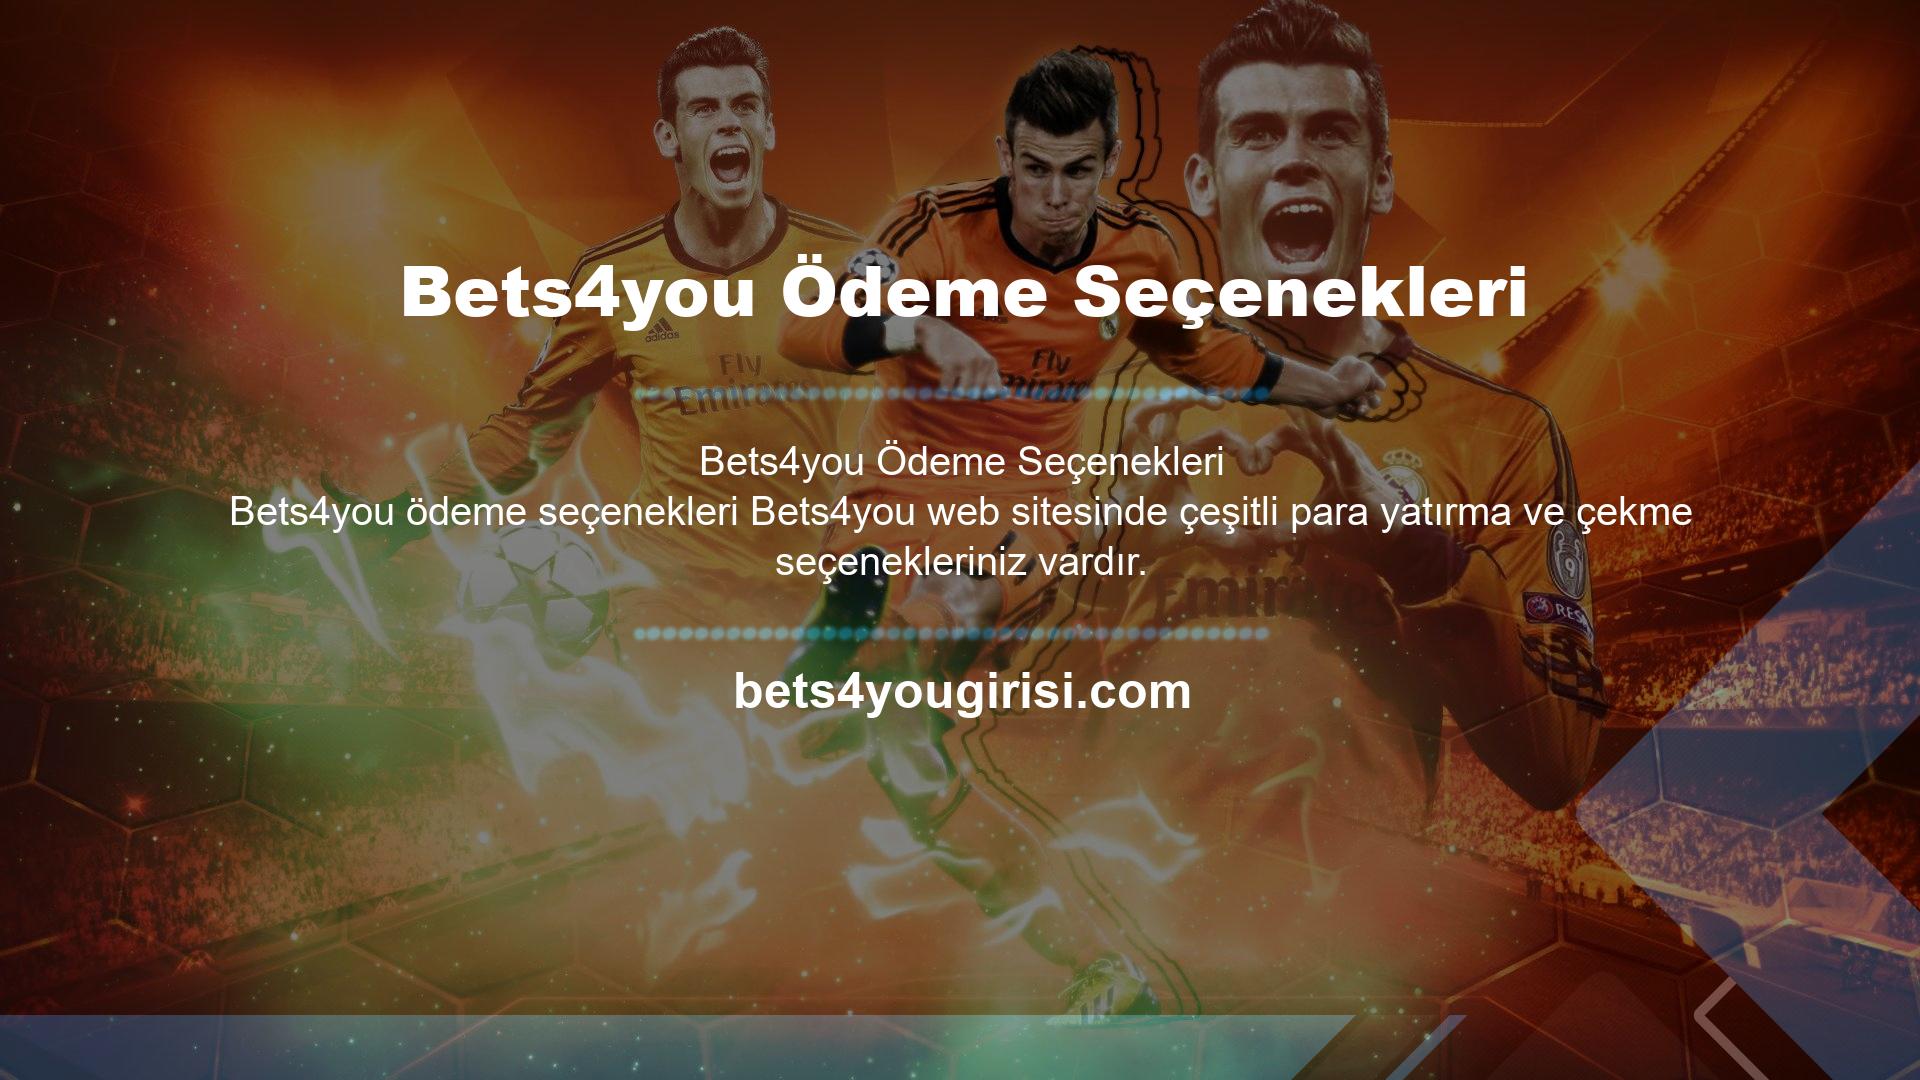 Türkiye'de online pazarda seçenekler sunan Bets4you, para yatırma ve çekme konusunda üyelerine sunduğu alternatiflerle tanınan bir firma haline gelmiştir